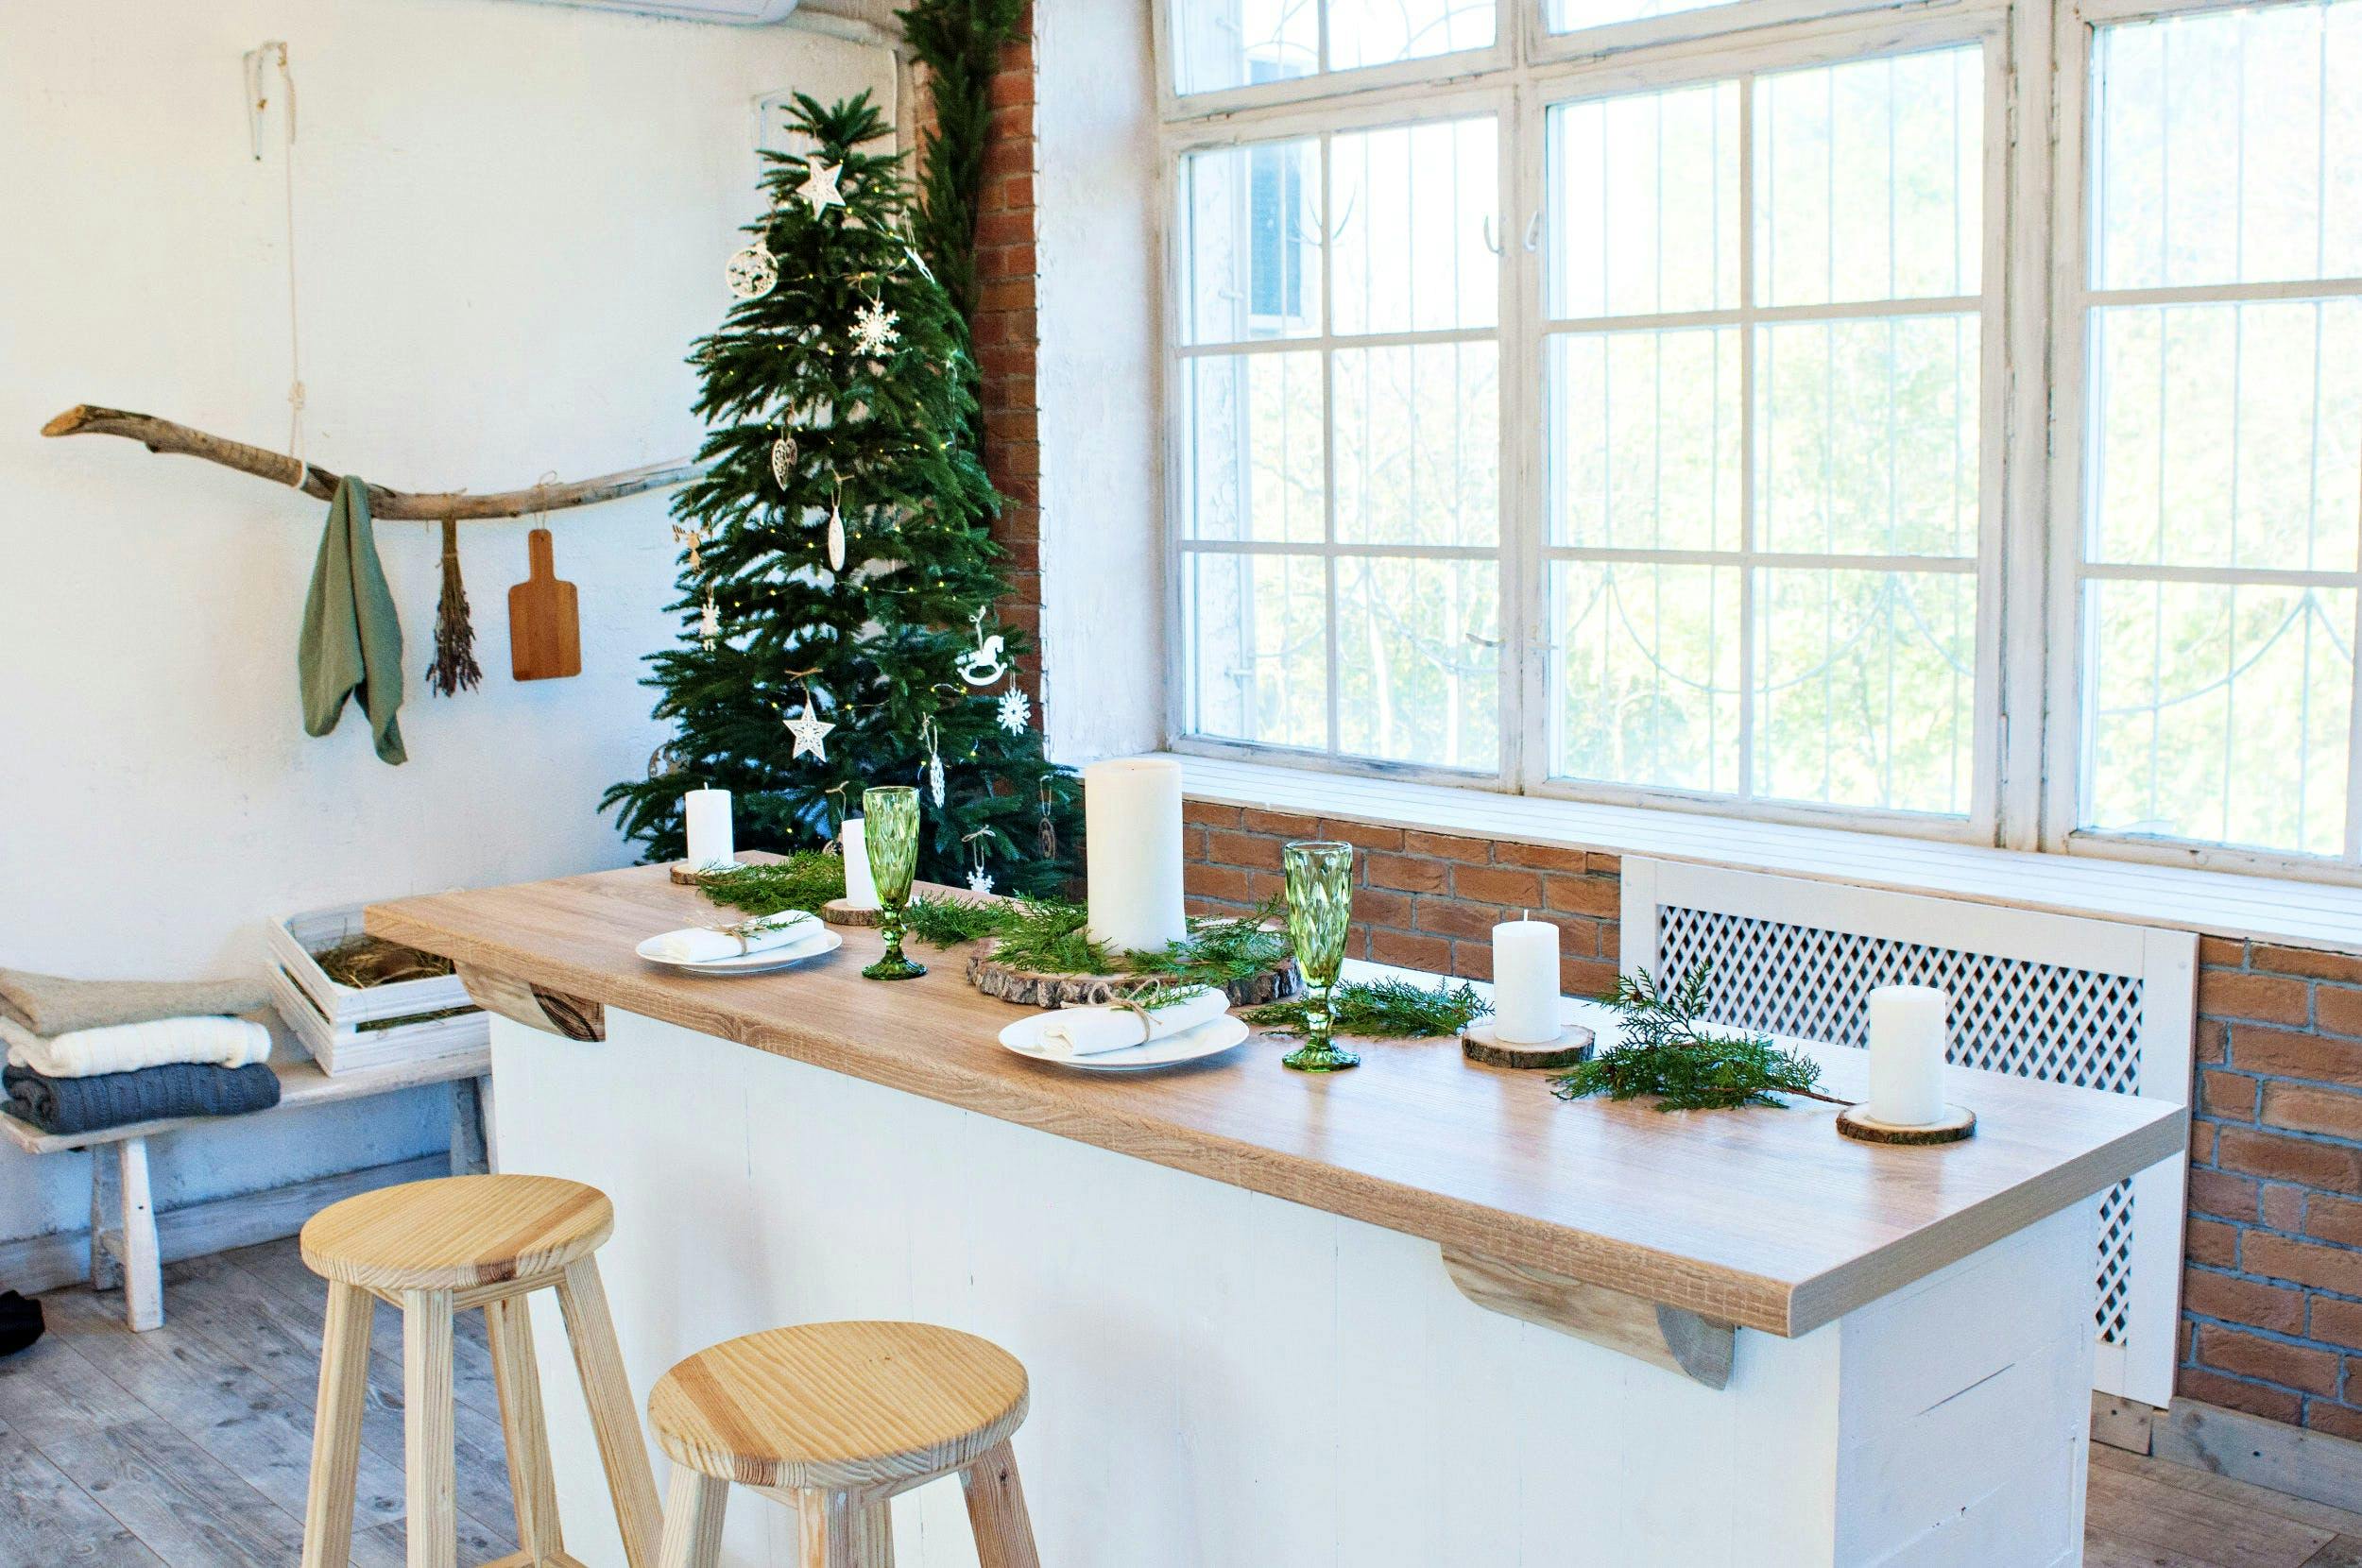 Imagen número 75 de {{The most creative Christmas decoration ideas for your kitchen}}